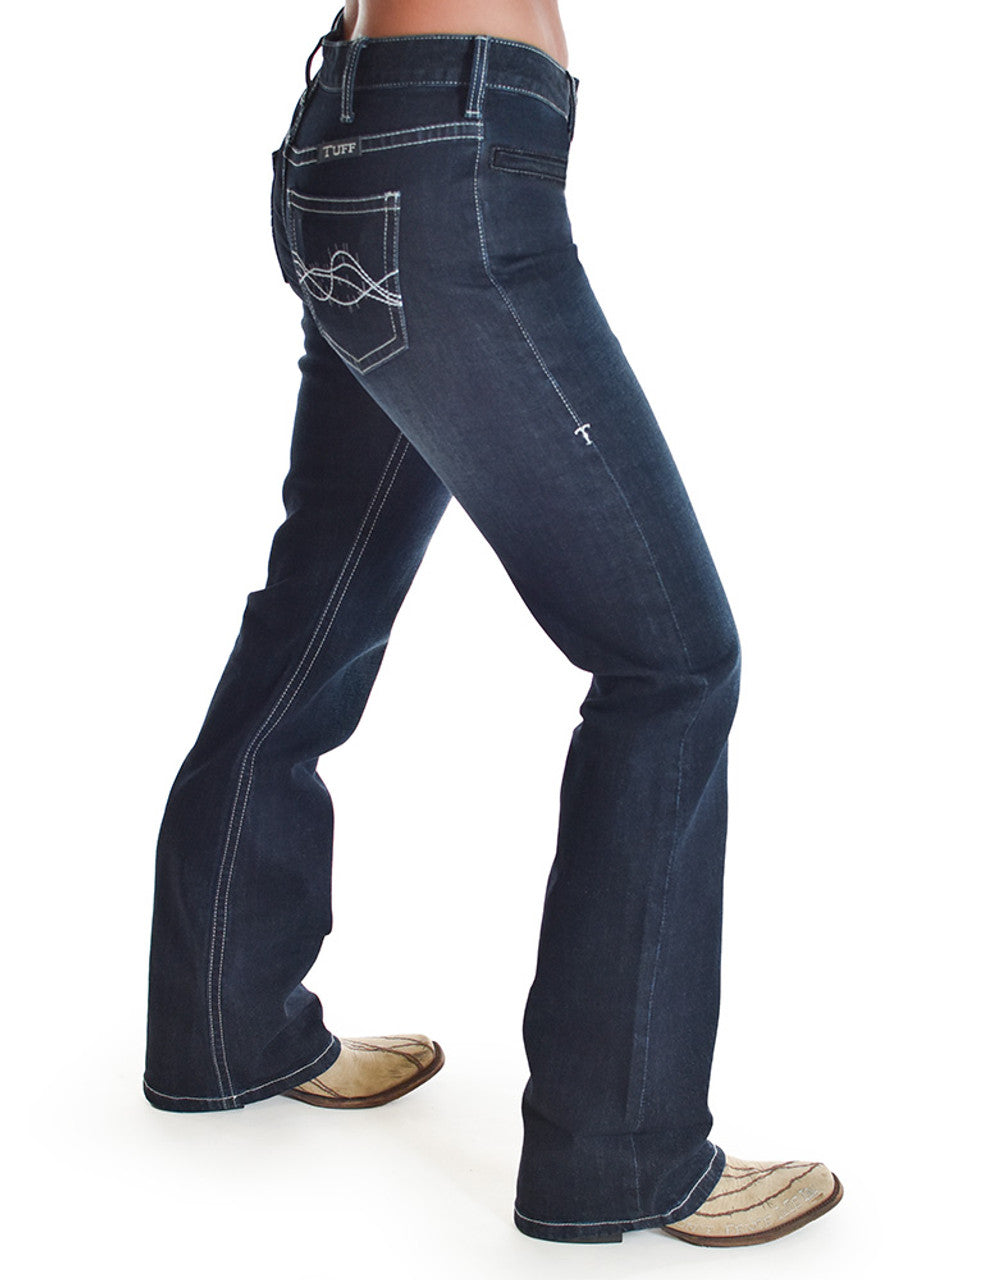 Cowgirl Tuff Jeans - Real Tuff